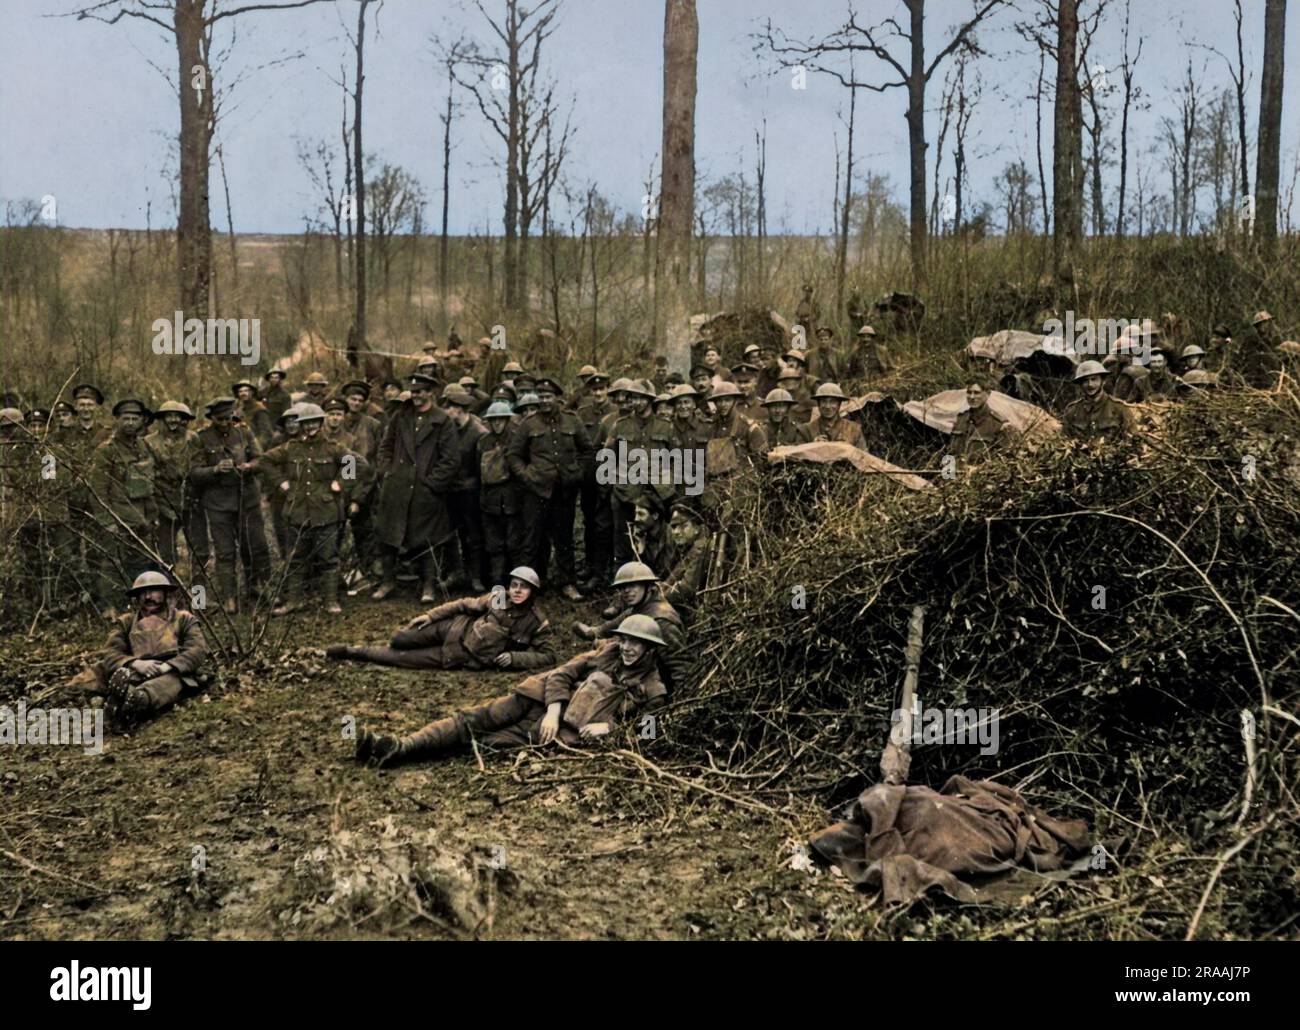 Truppe britanniche appartenenti a un reggimento territoriale londinese, accampate in un bosco sul fronte occidentale in Francia durante la prima guerra mondiale. Data: Circa 1916 Foto Stock